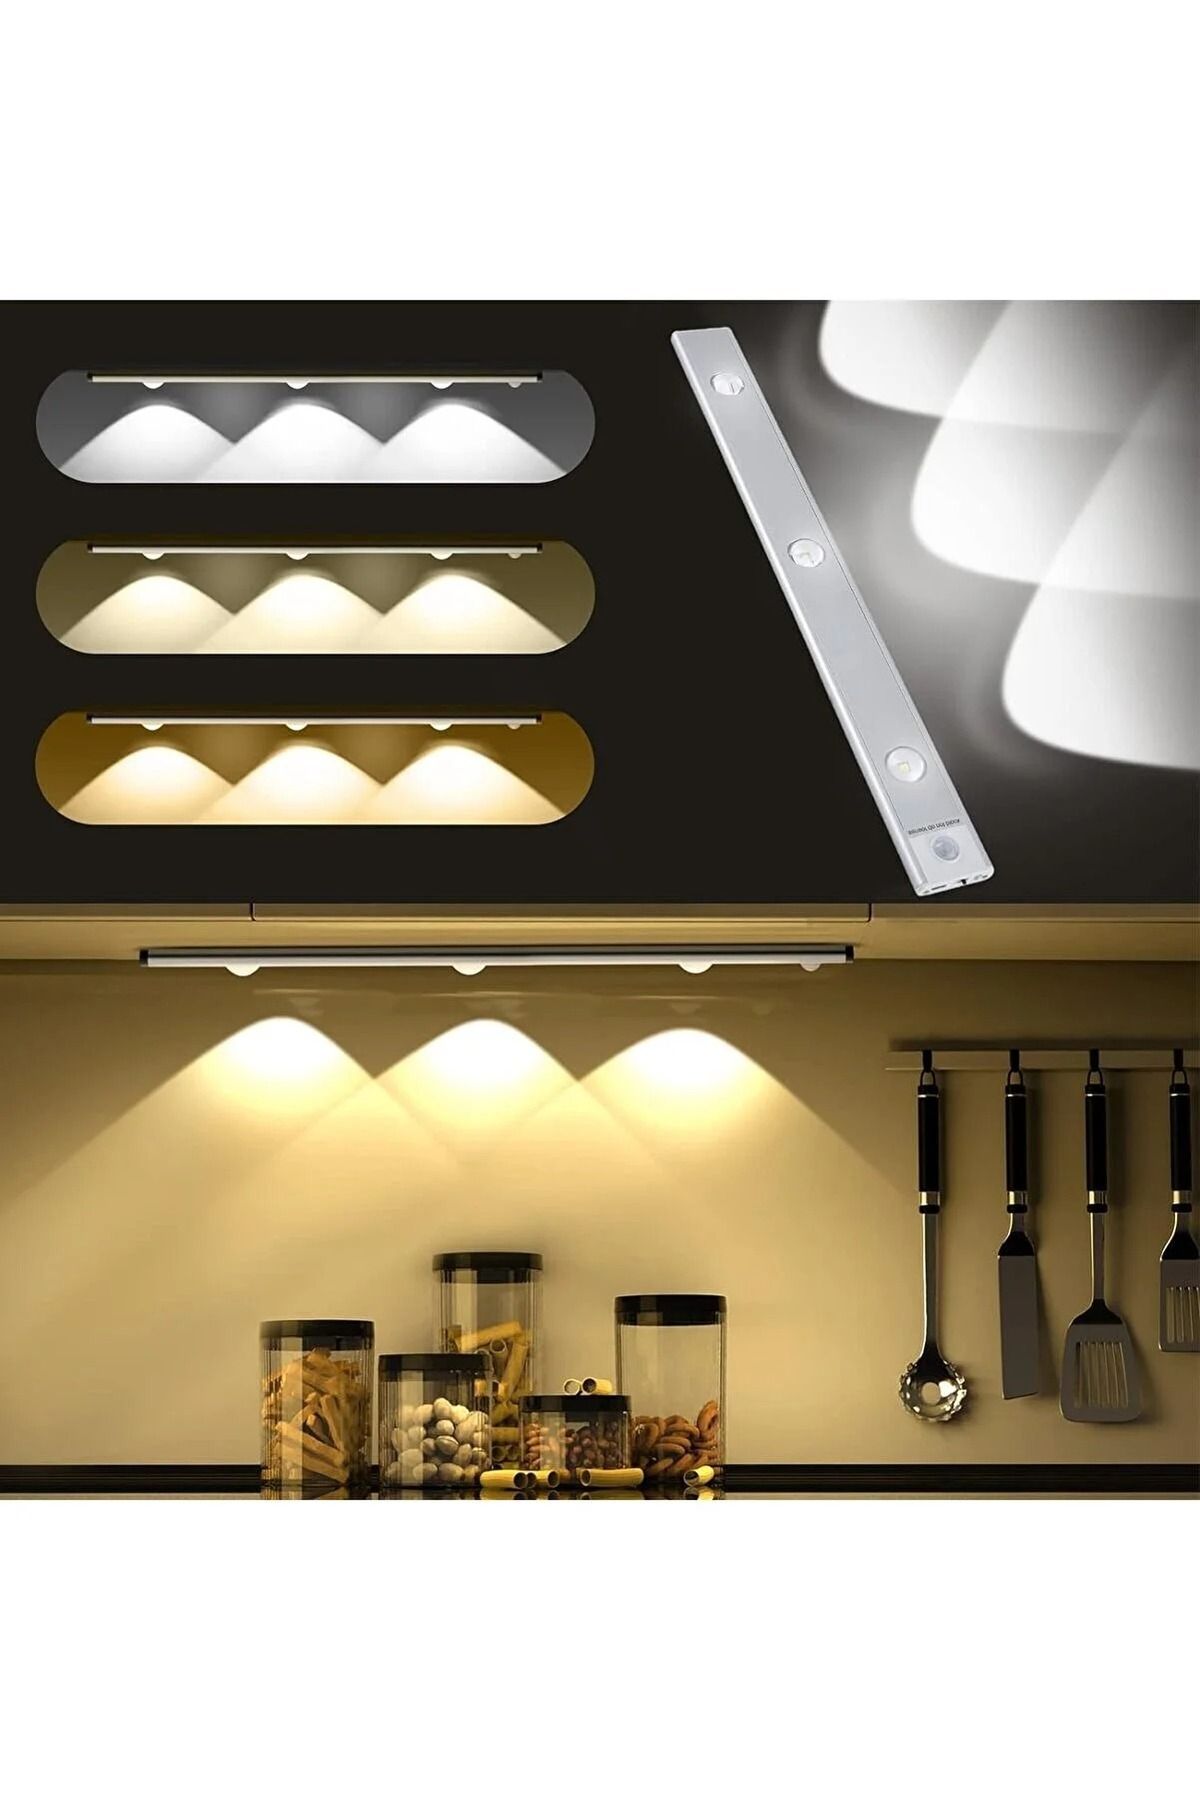 ledalemi Mutfak Dolap Altı Lambası Hareket Sensörlü LED Aydınlatma, USB ile Şarj Edilebilir, Taşınabilir,40cm